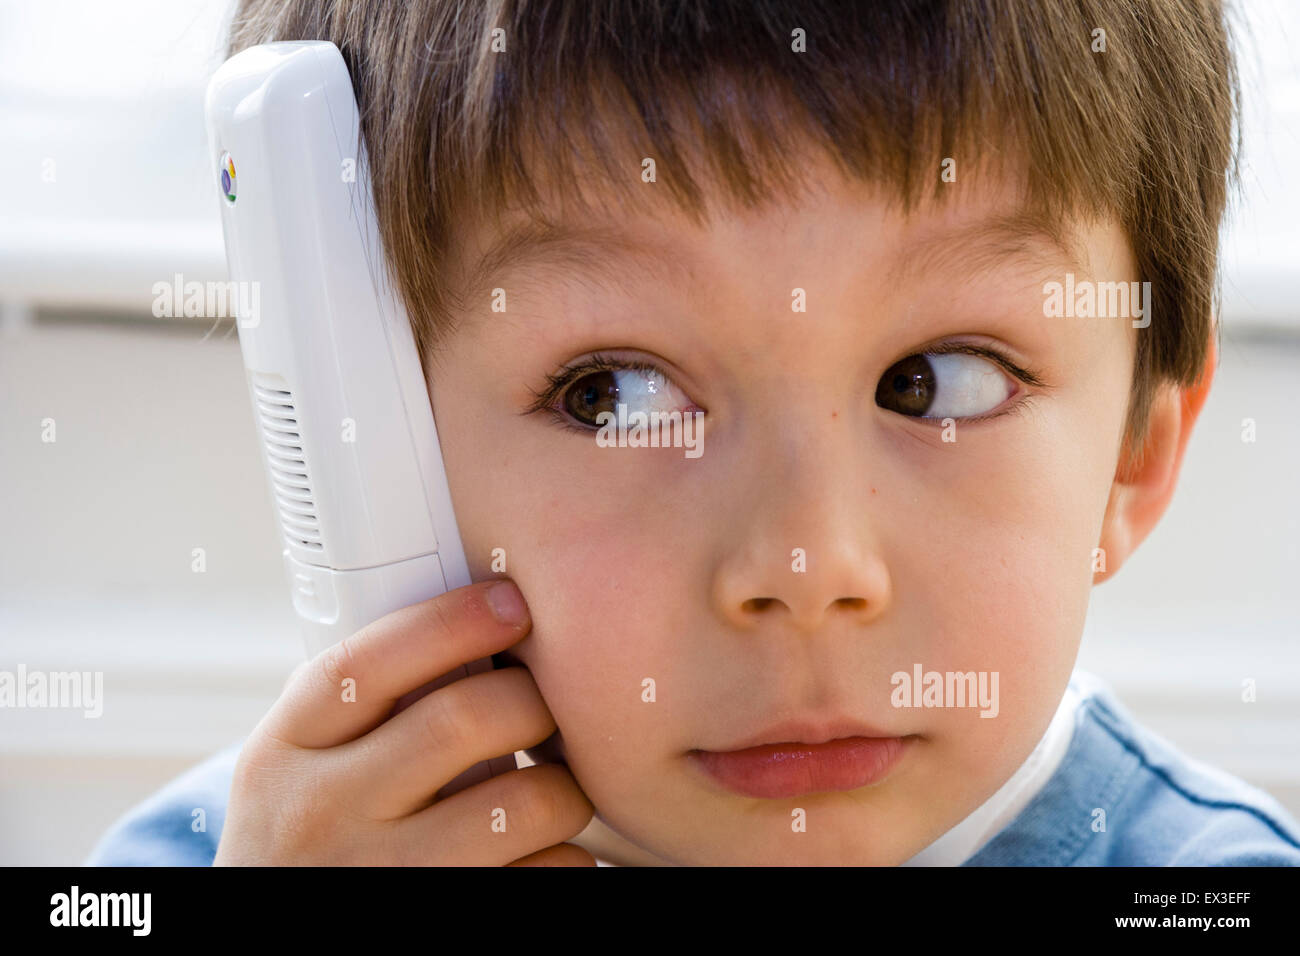 Nahaufnahme von einem kaukasischen Kind, Junge, 6-7 Jahre alt, Verlegung im Innenbereich auf Holzboden holding Telefon an sein Ohr, die versuchen, die Lautsprecher zu hören. Stockfoto